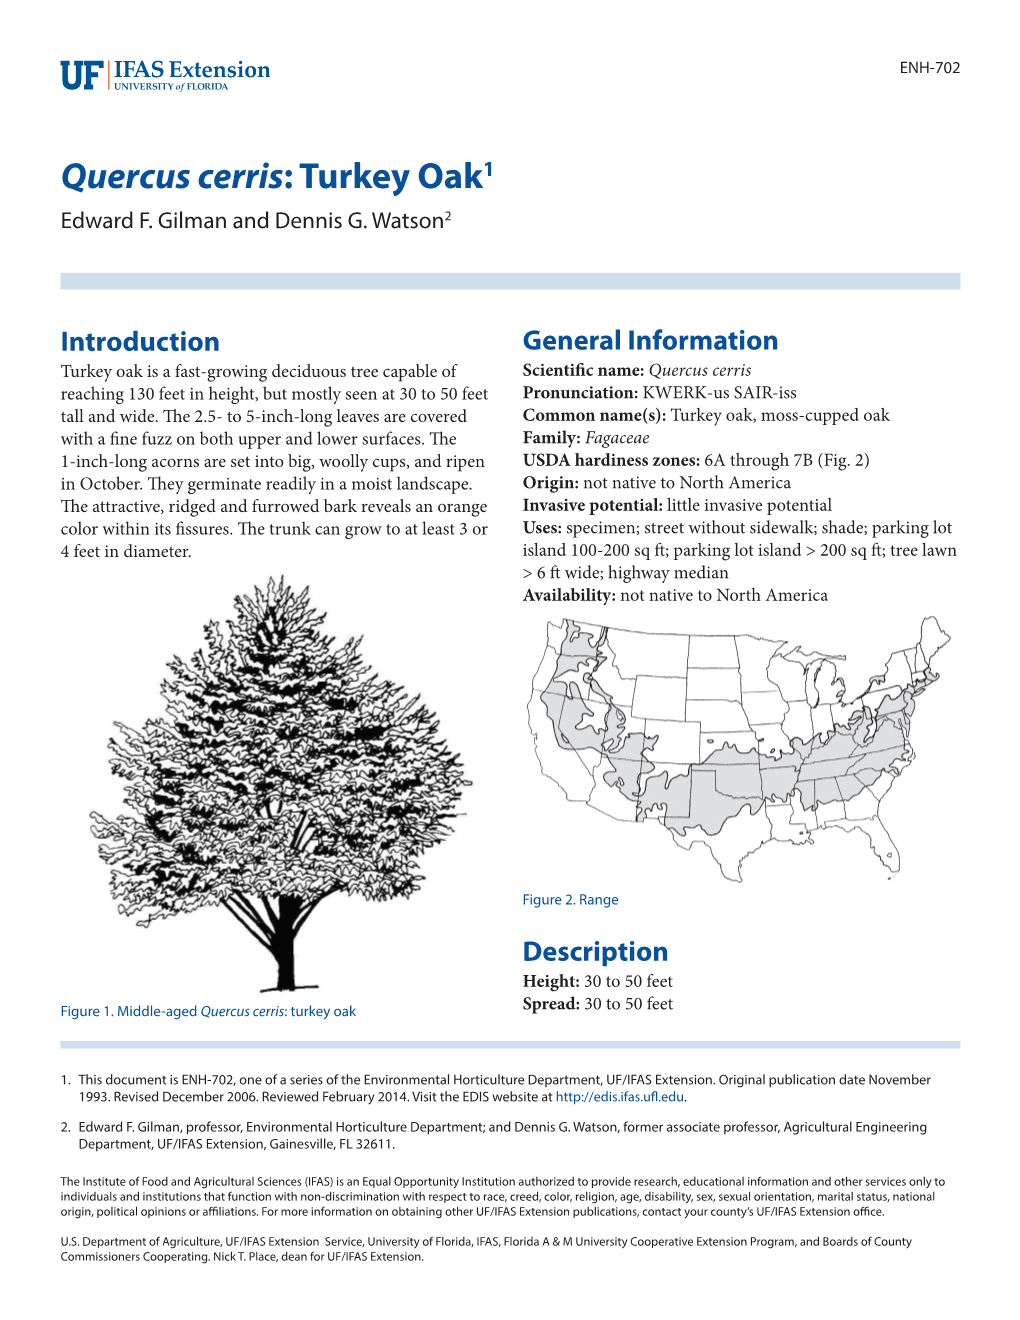 Quercus Cerris: Turkey Oak1 Edward F